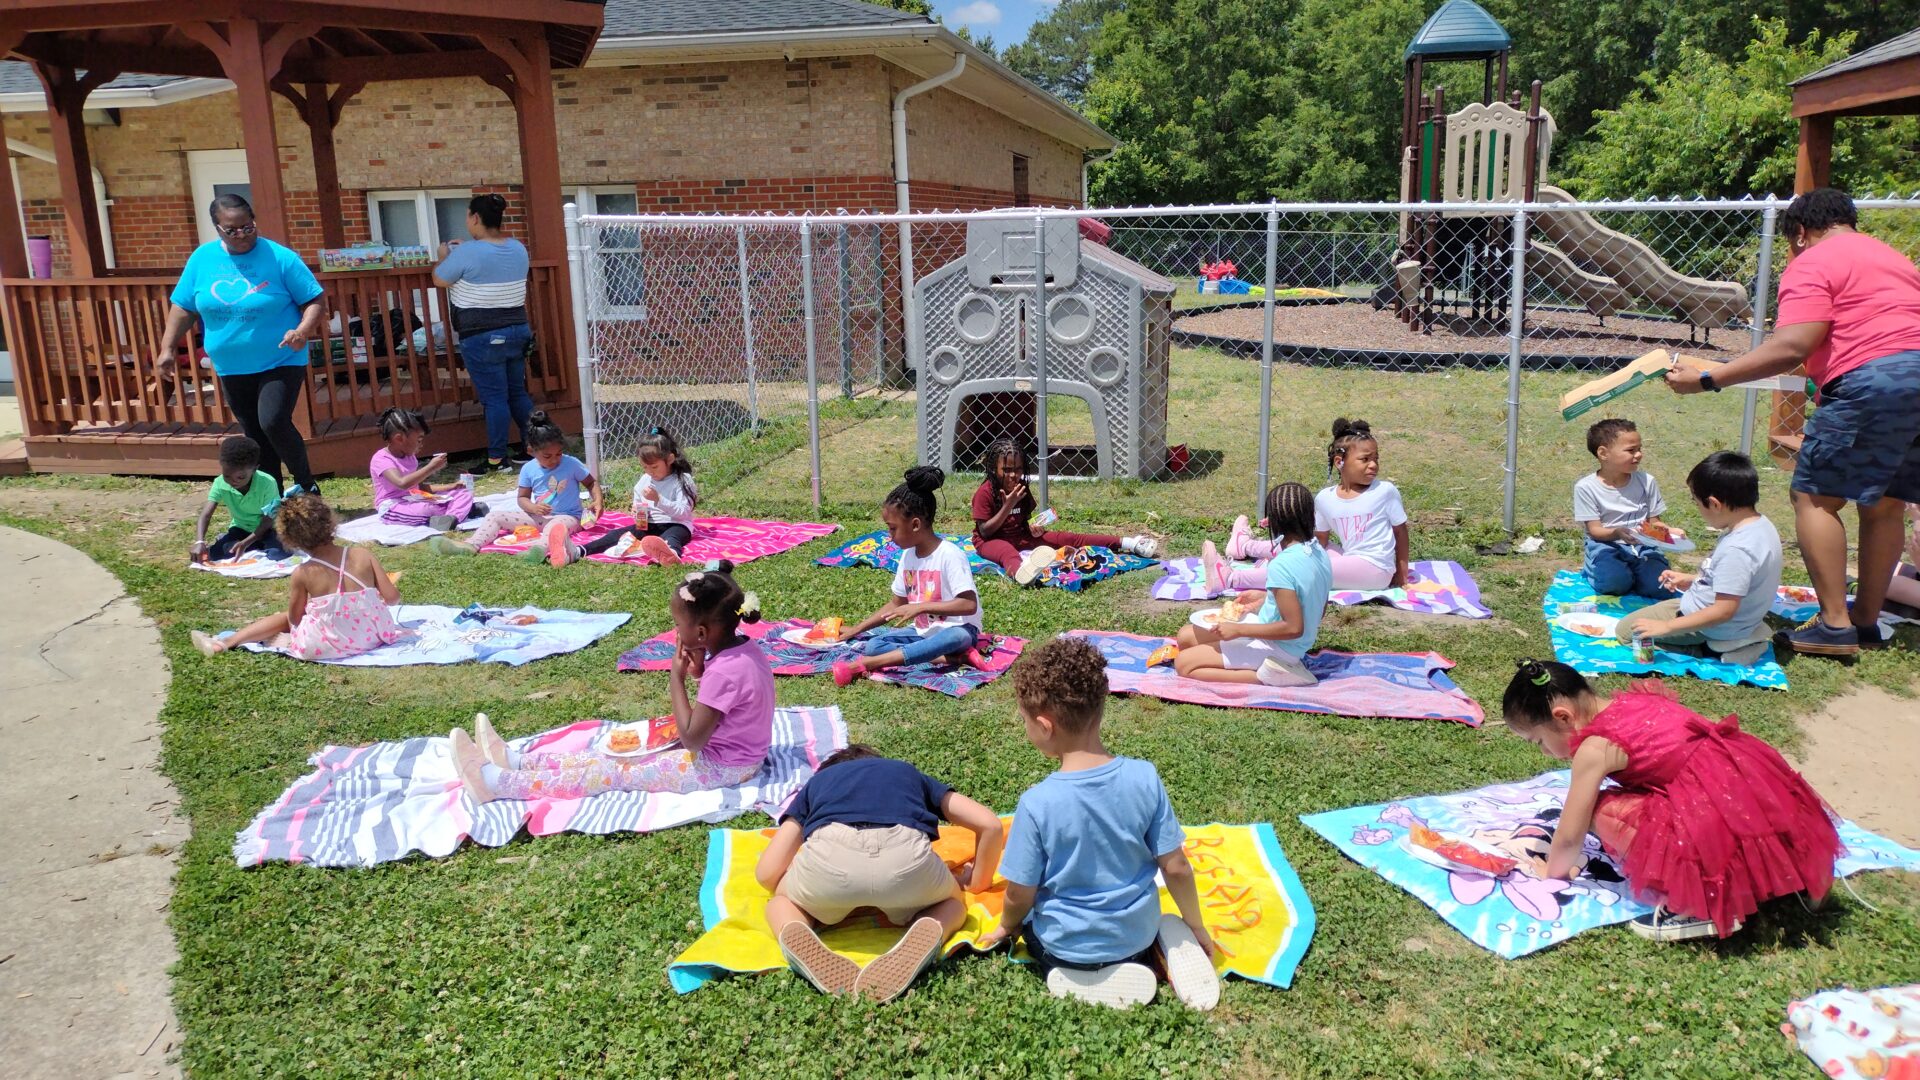 Kids sitting outside Primary beginnings 5-Star Preschools in Raleigh NC